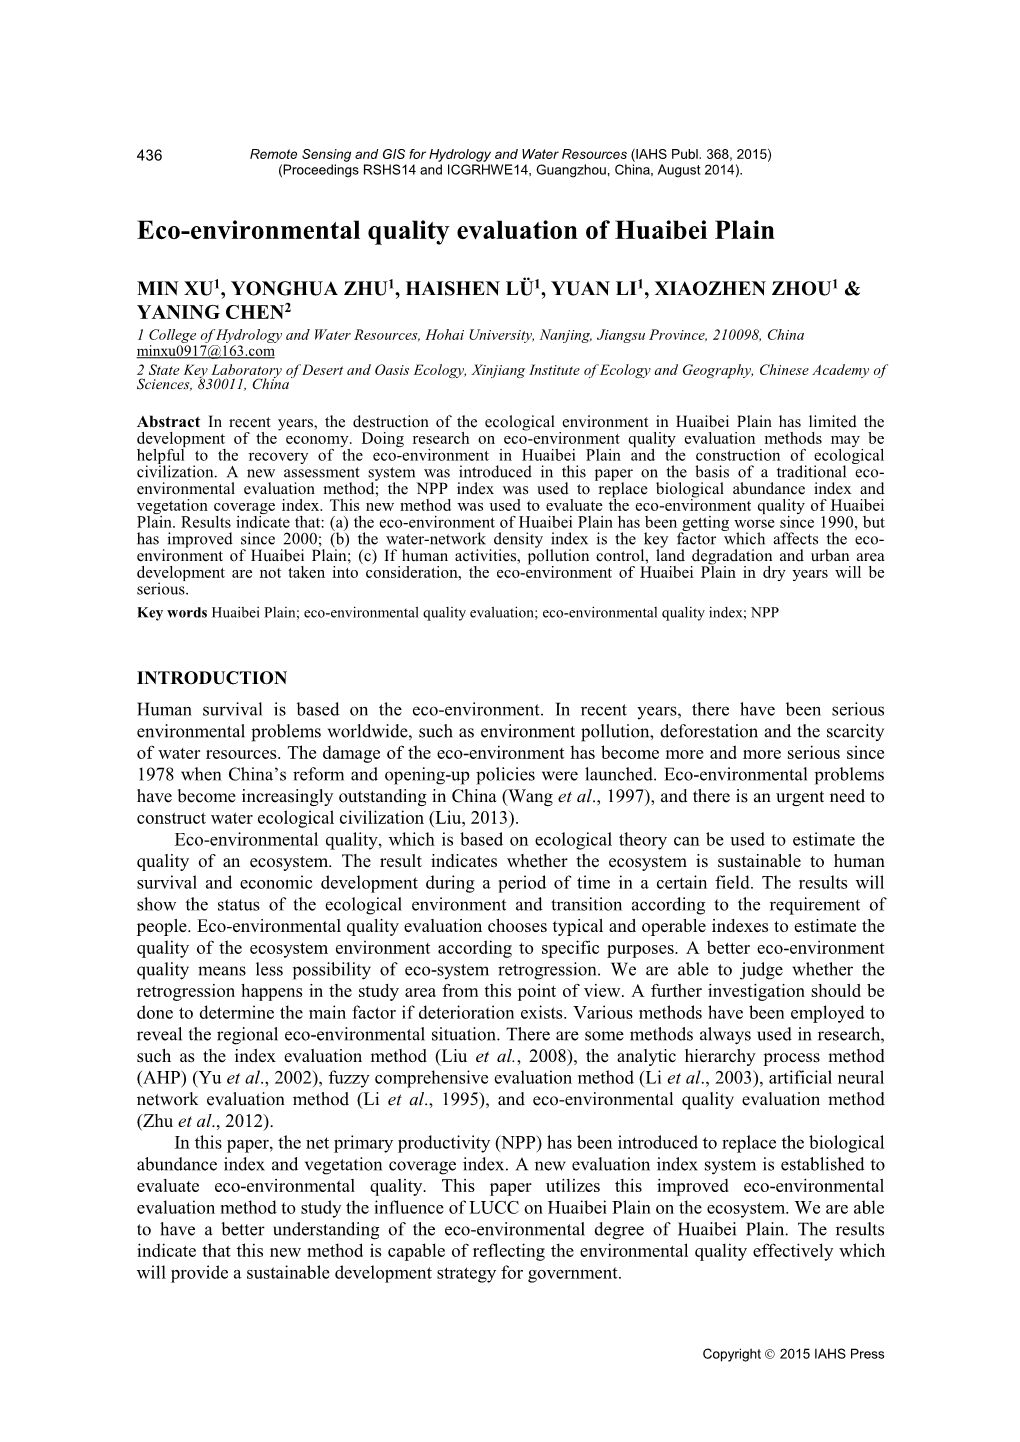 Eco-Environmental Quality Evaluation of Huaibei Plain